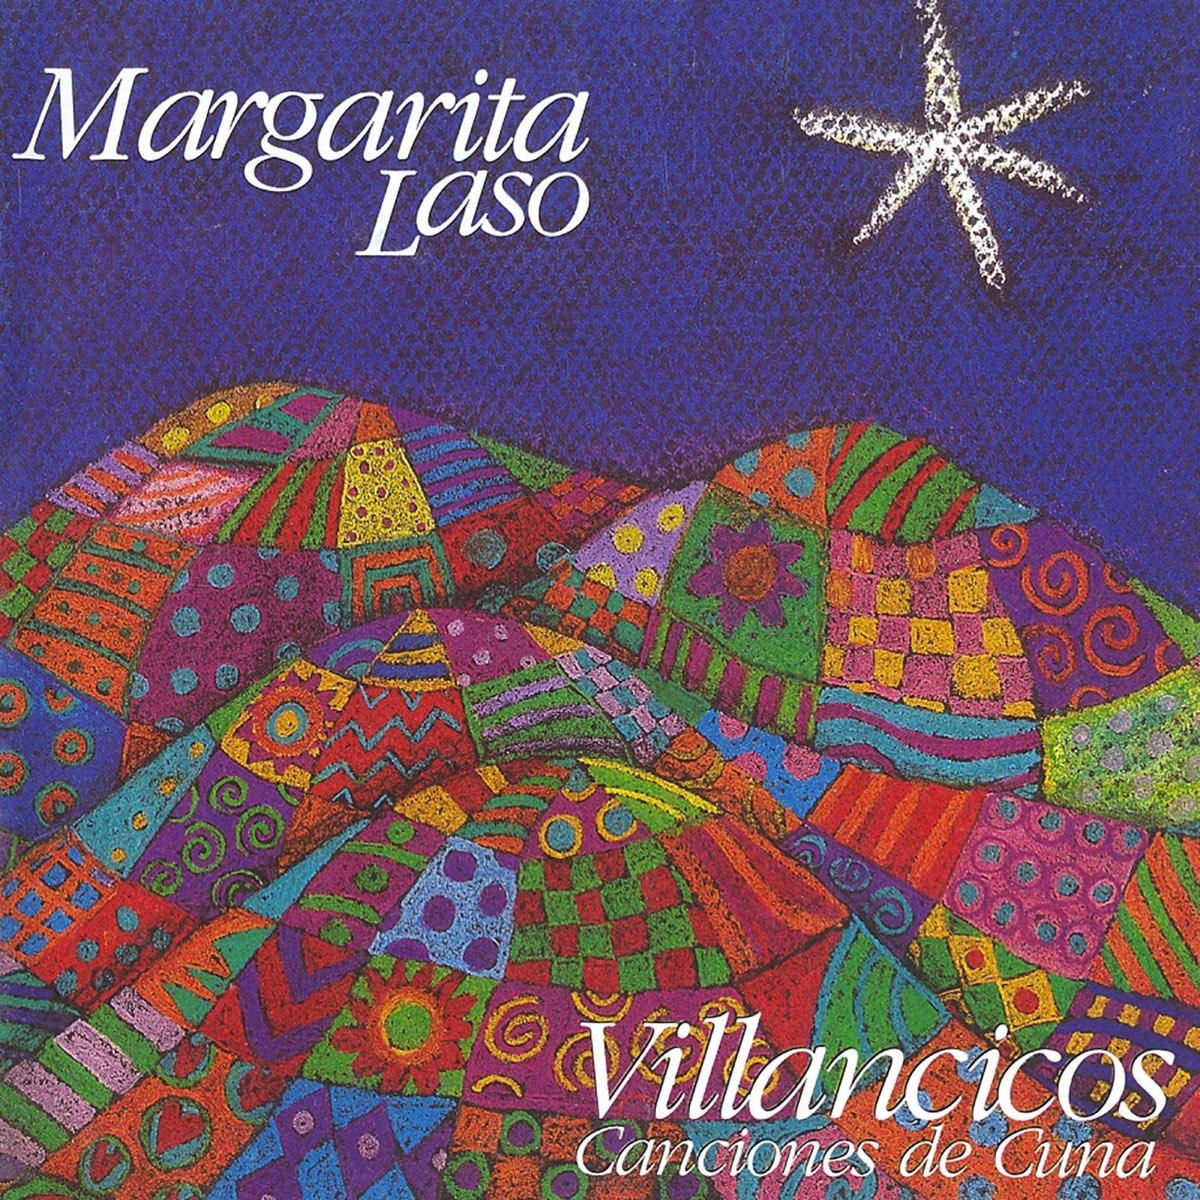 Villancicos y Canciones de Cuna by Margarita Laso on Apple Music